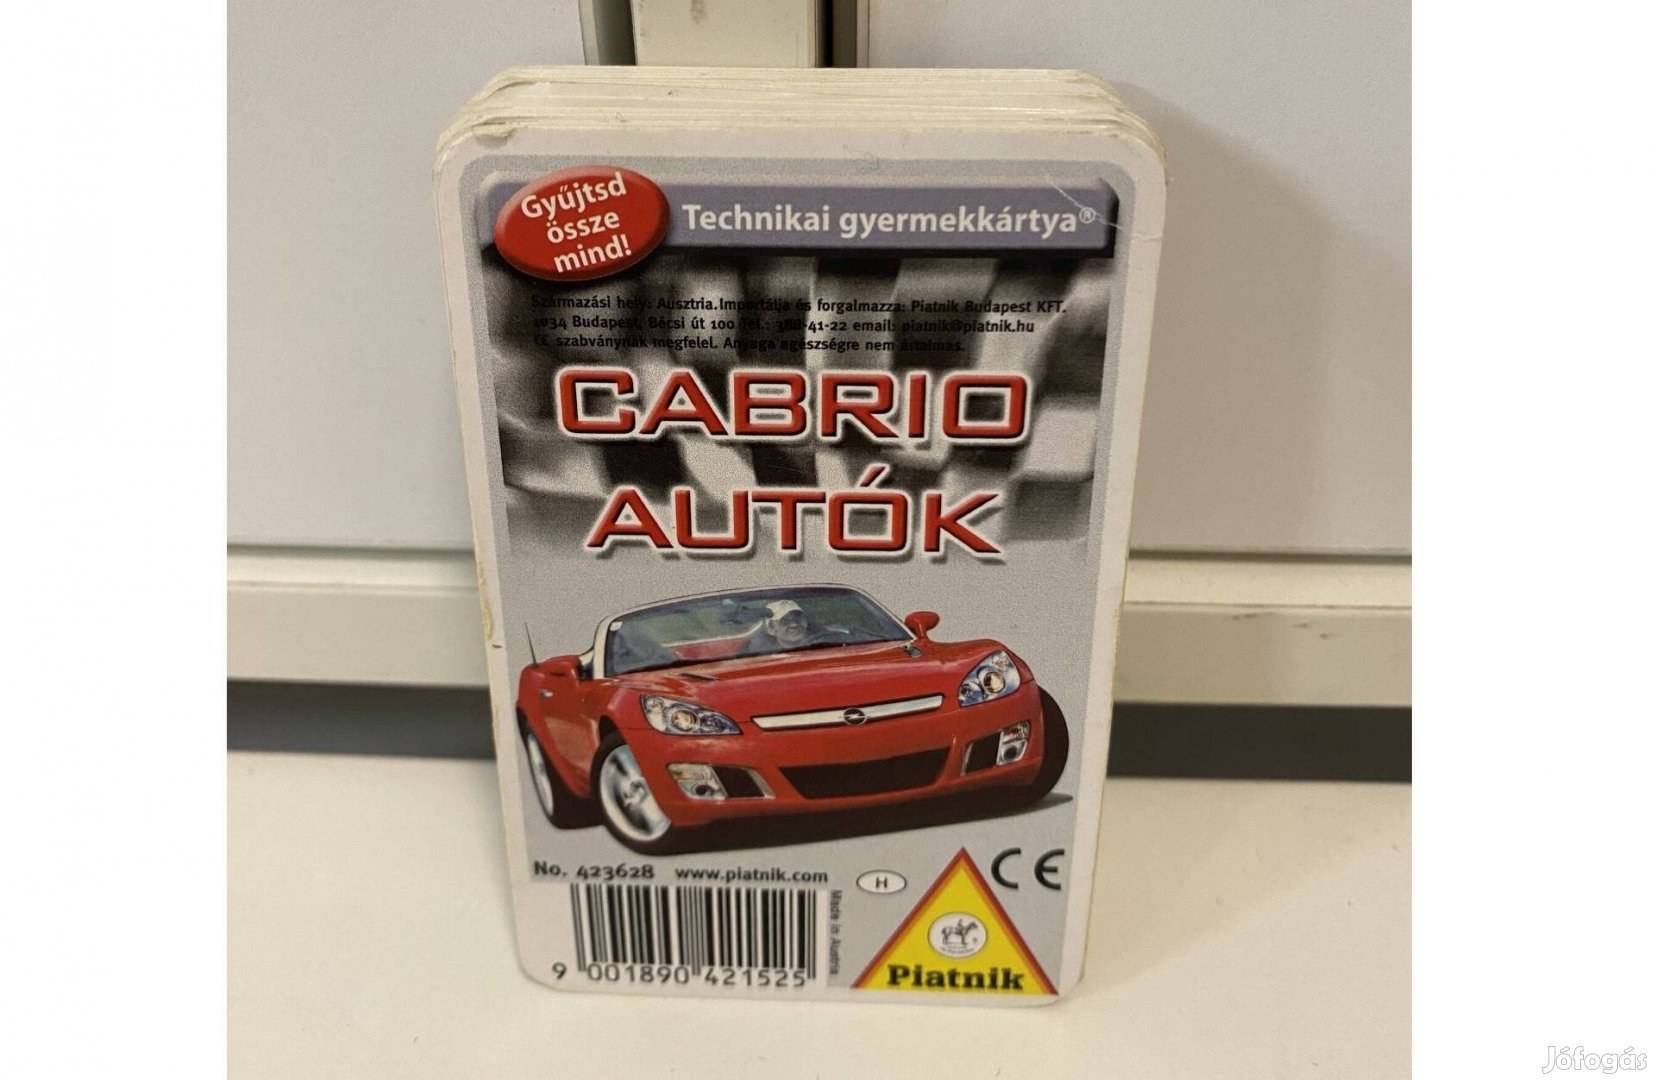 Cabrio autók piatnik technikai gyermekkártya kártya csomag